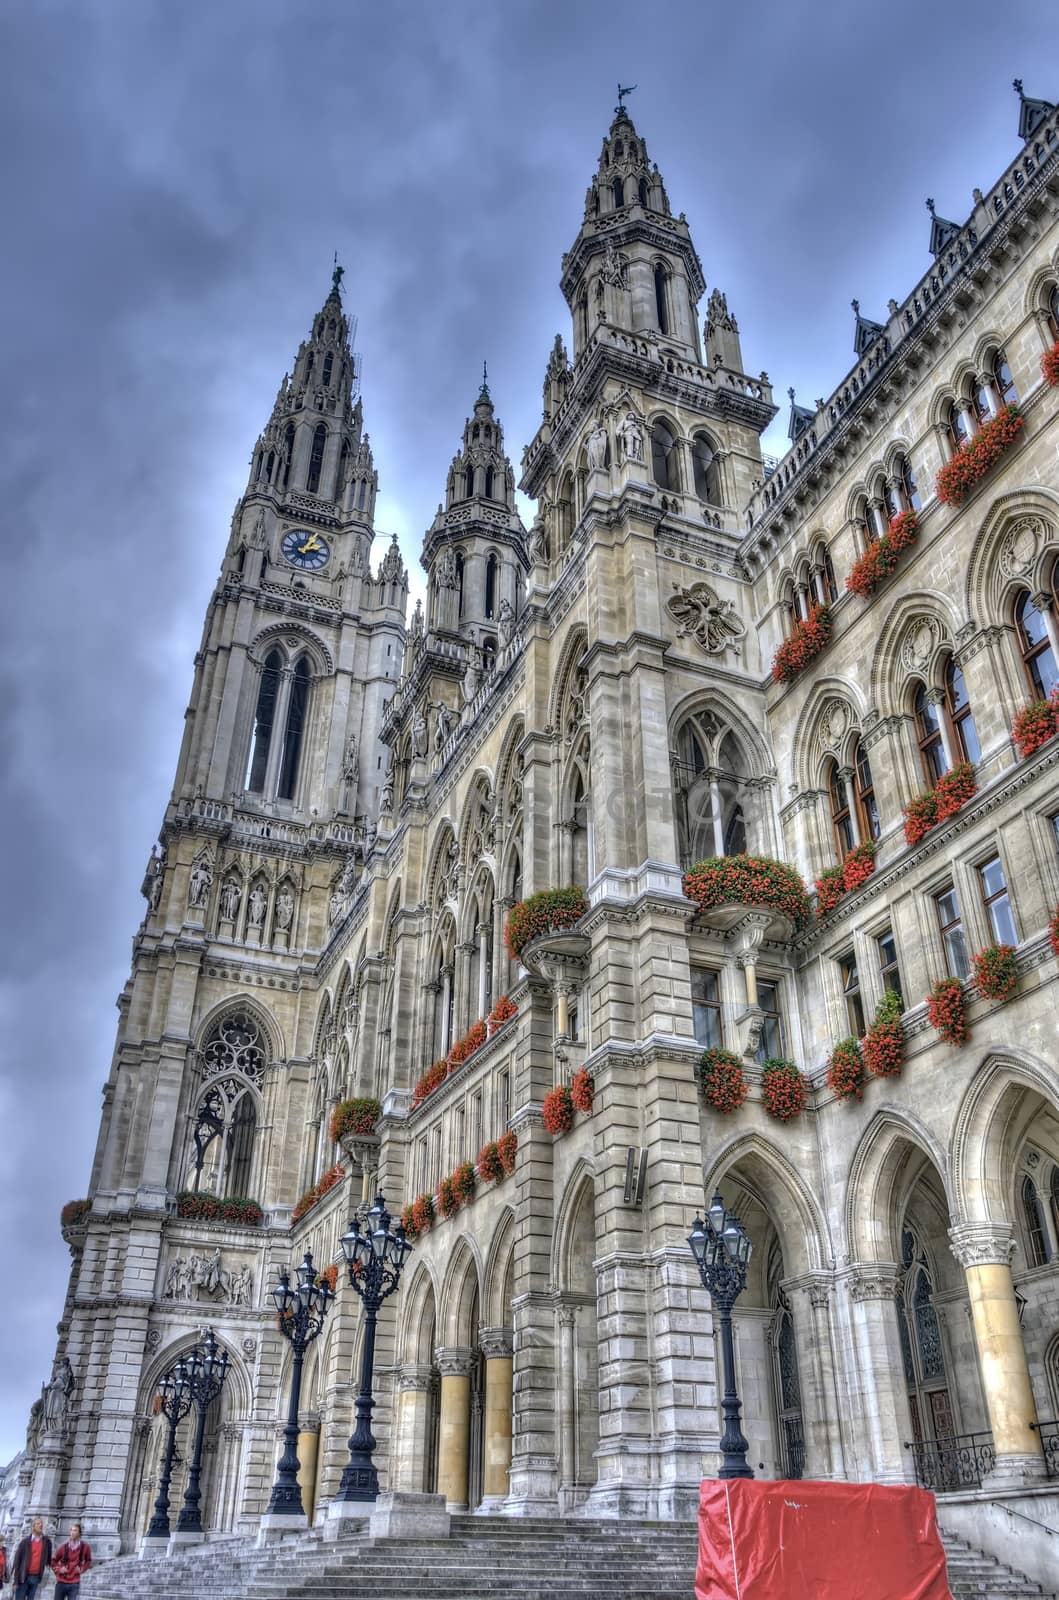 City hall of Vienna, Austria by anderm